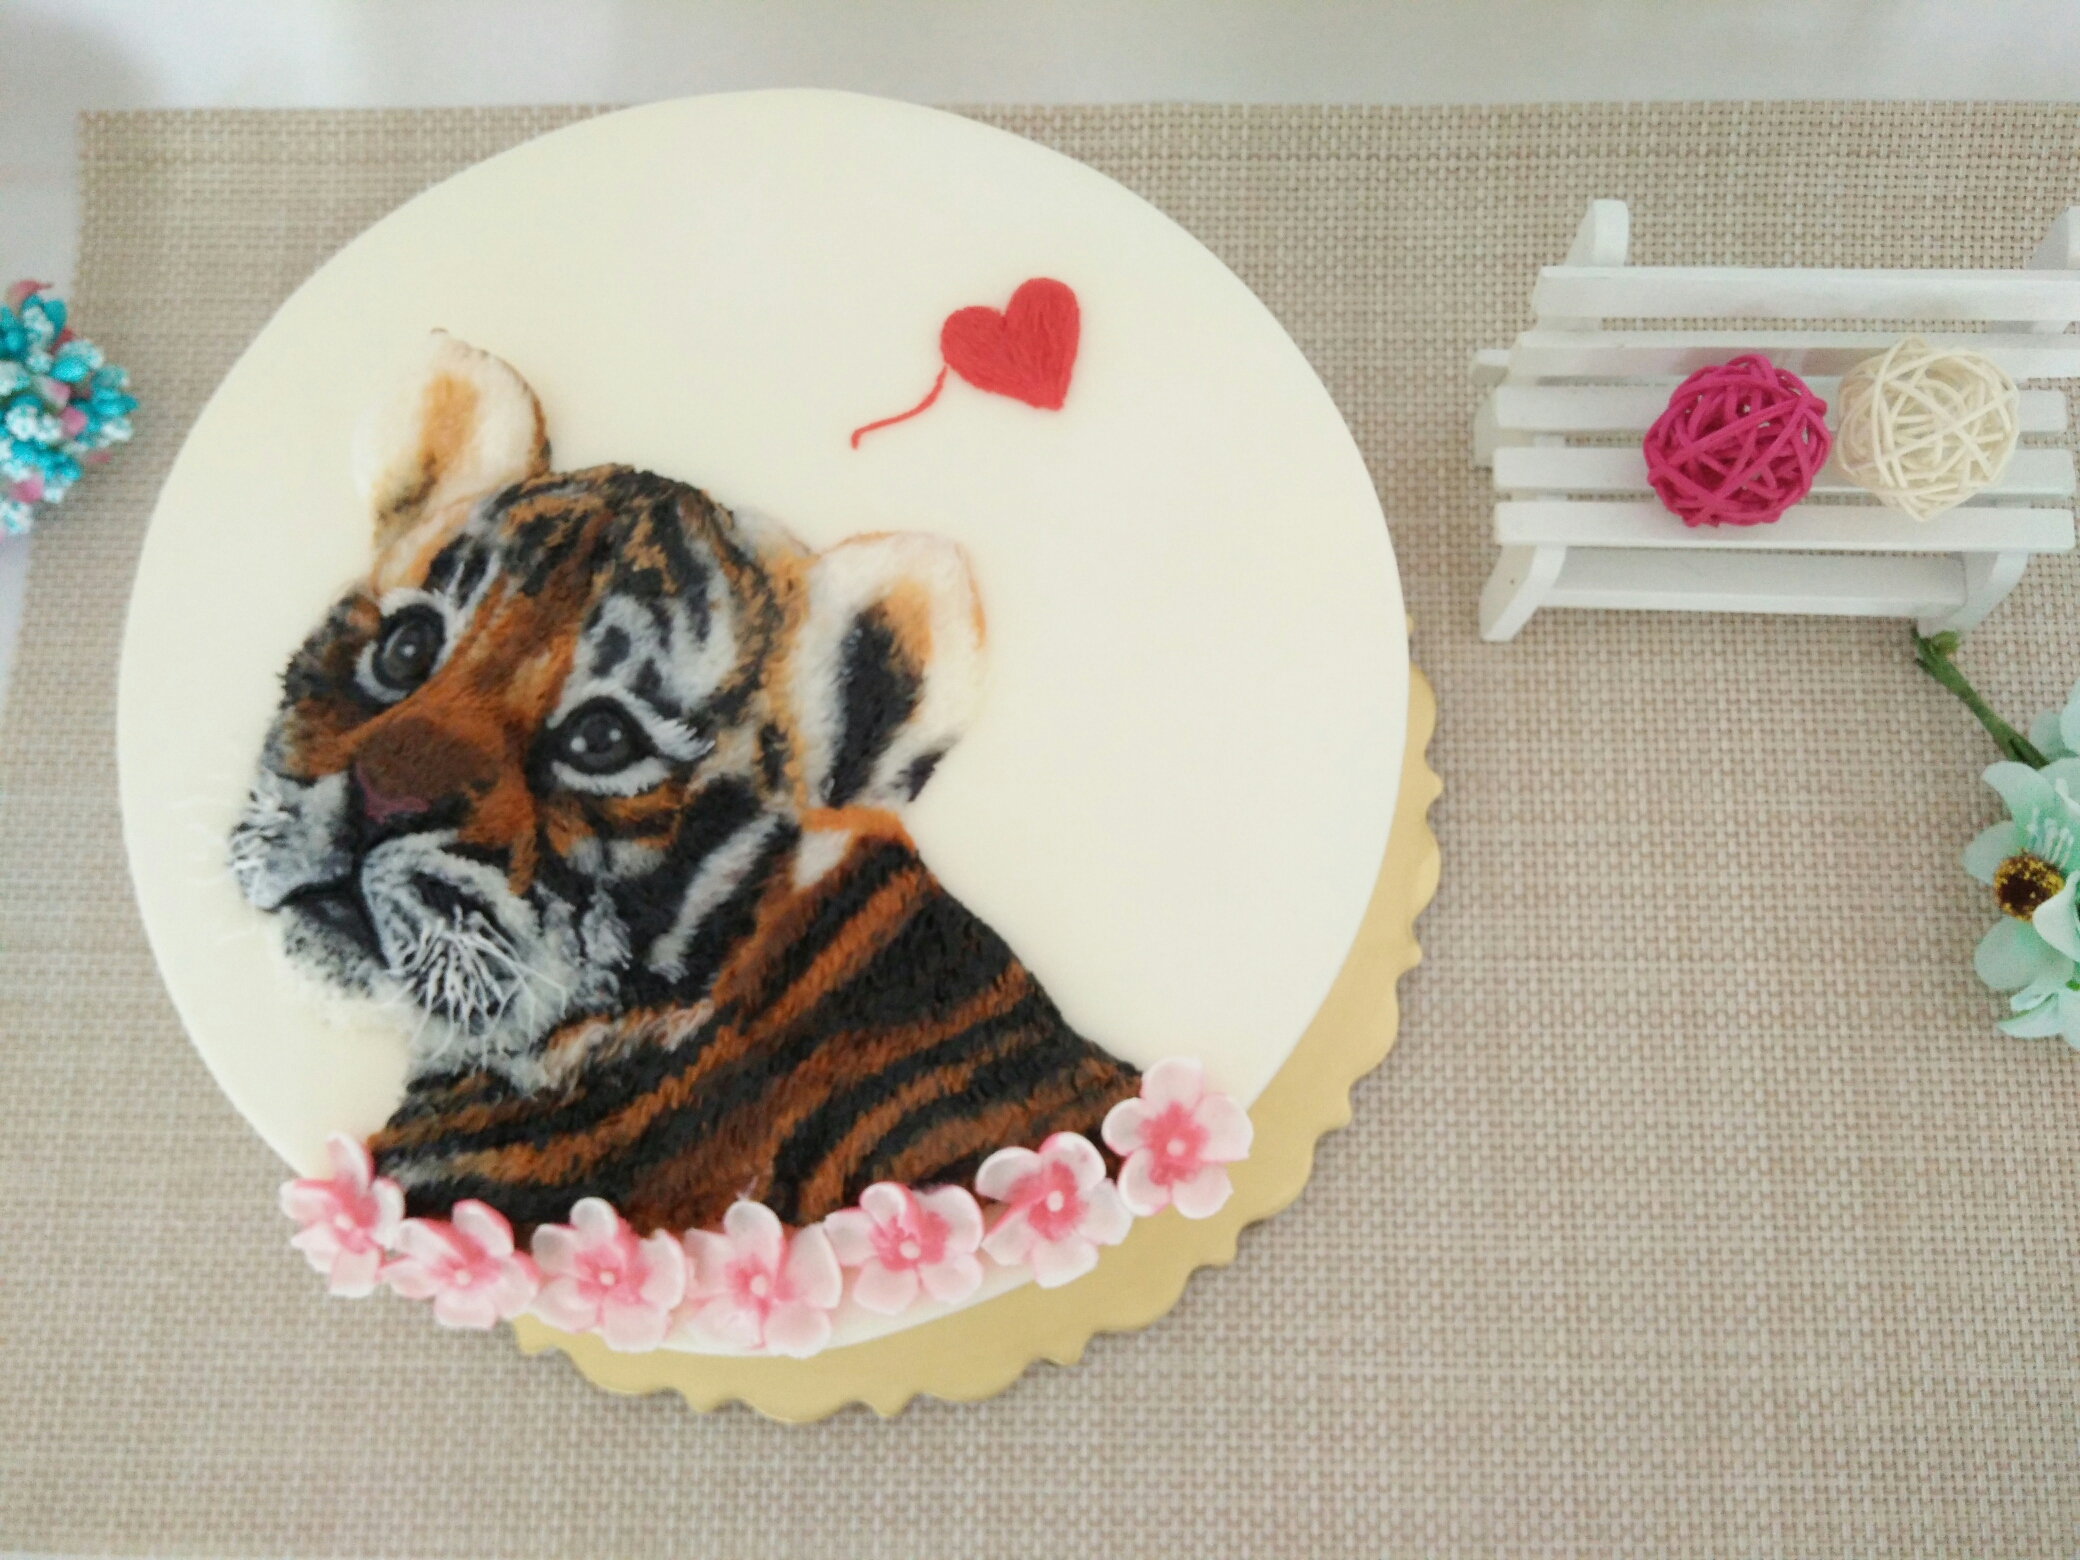 立体手绘蛋糕…生灵活现的老虎的做法